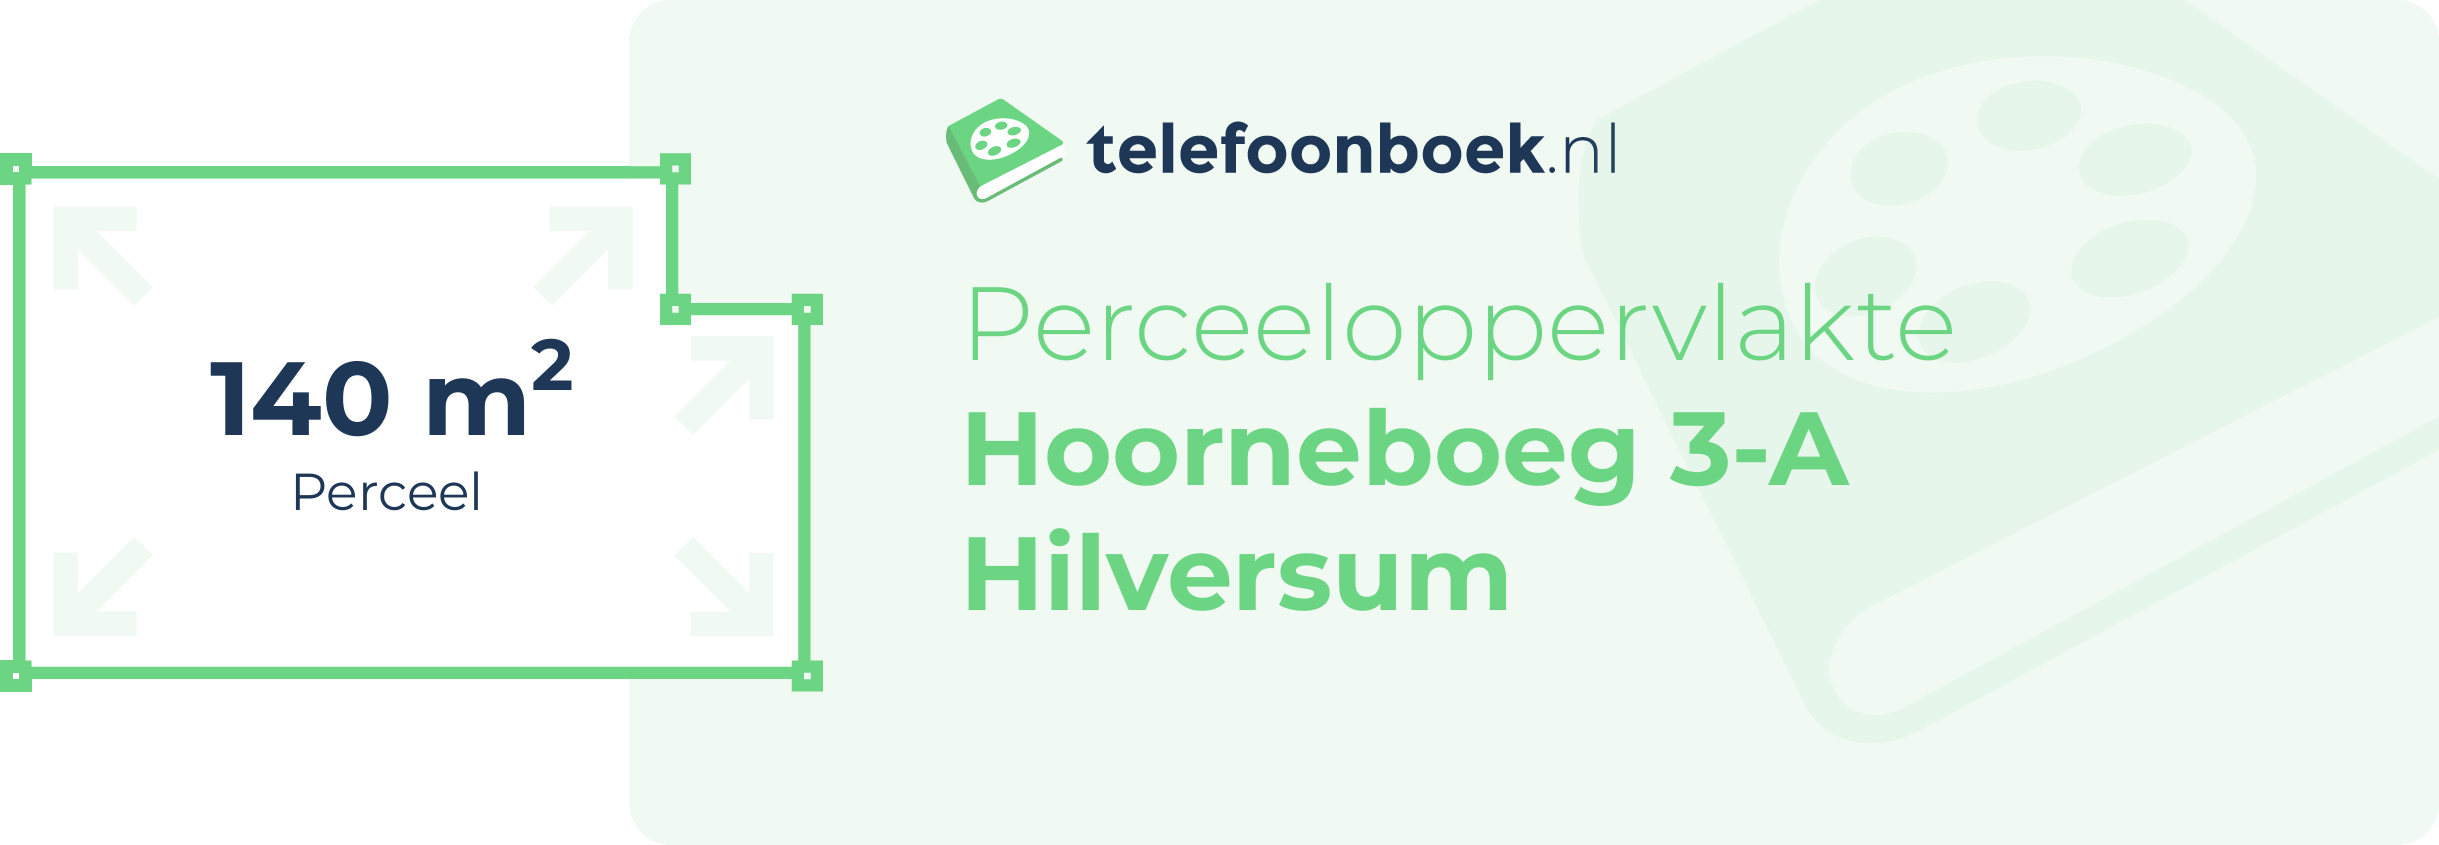 Perceeloppervlakte Hoorneboeg 3-A Hilversum